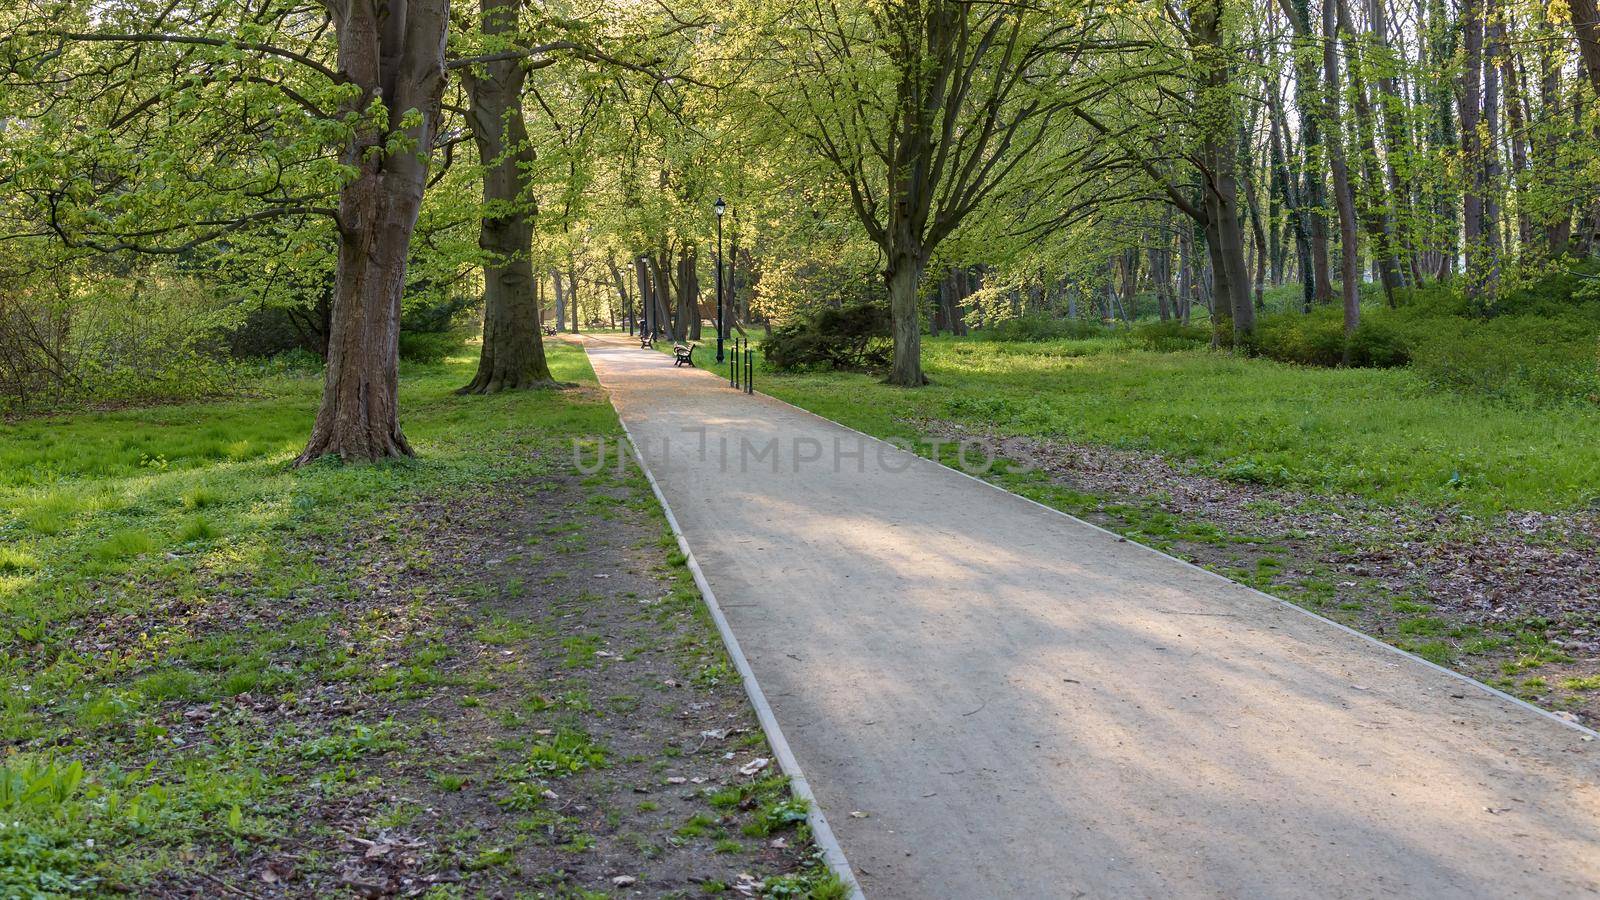 Alley in Zdrojowy park in Swinoujscie by mkos83